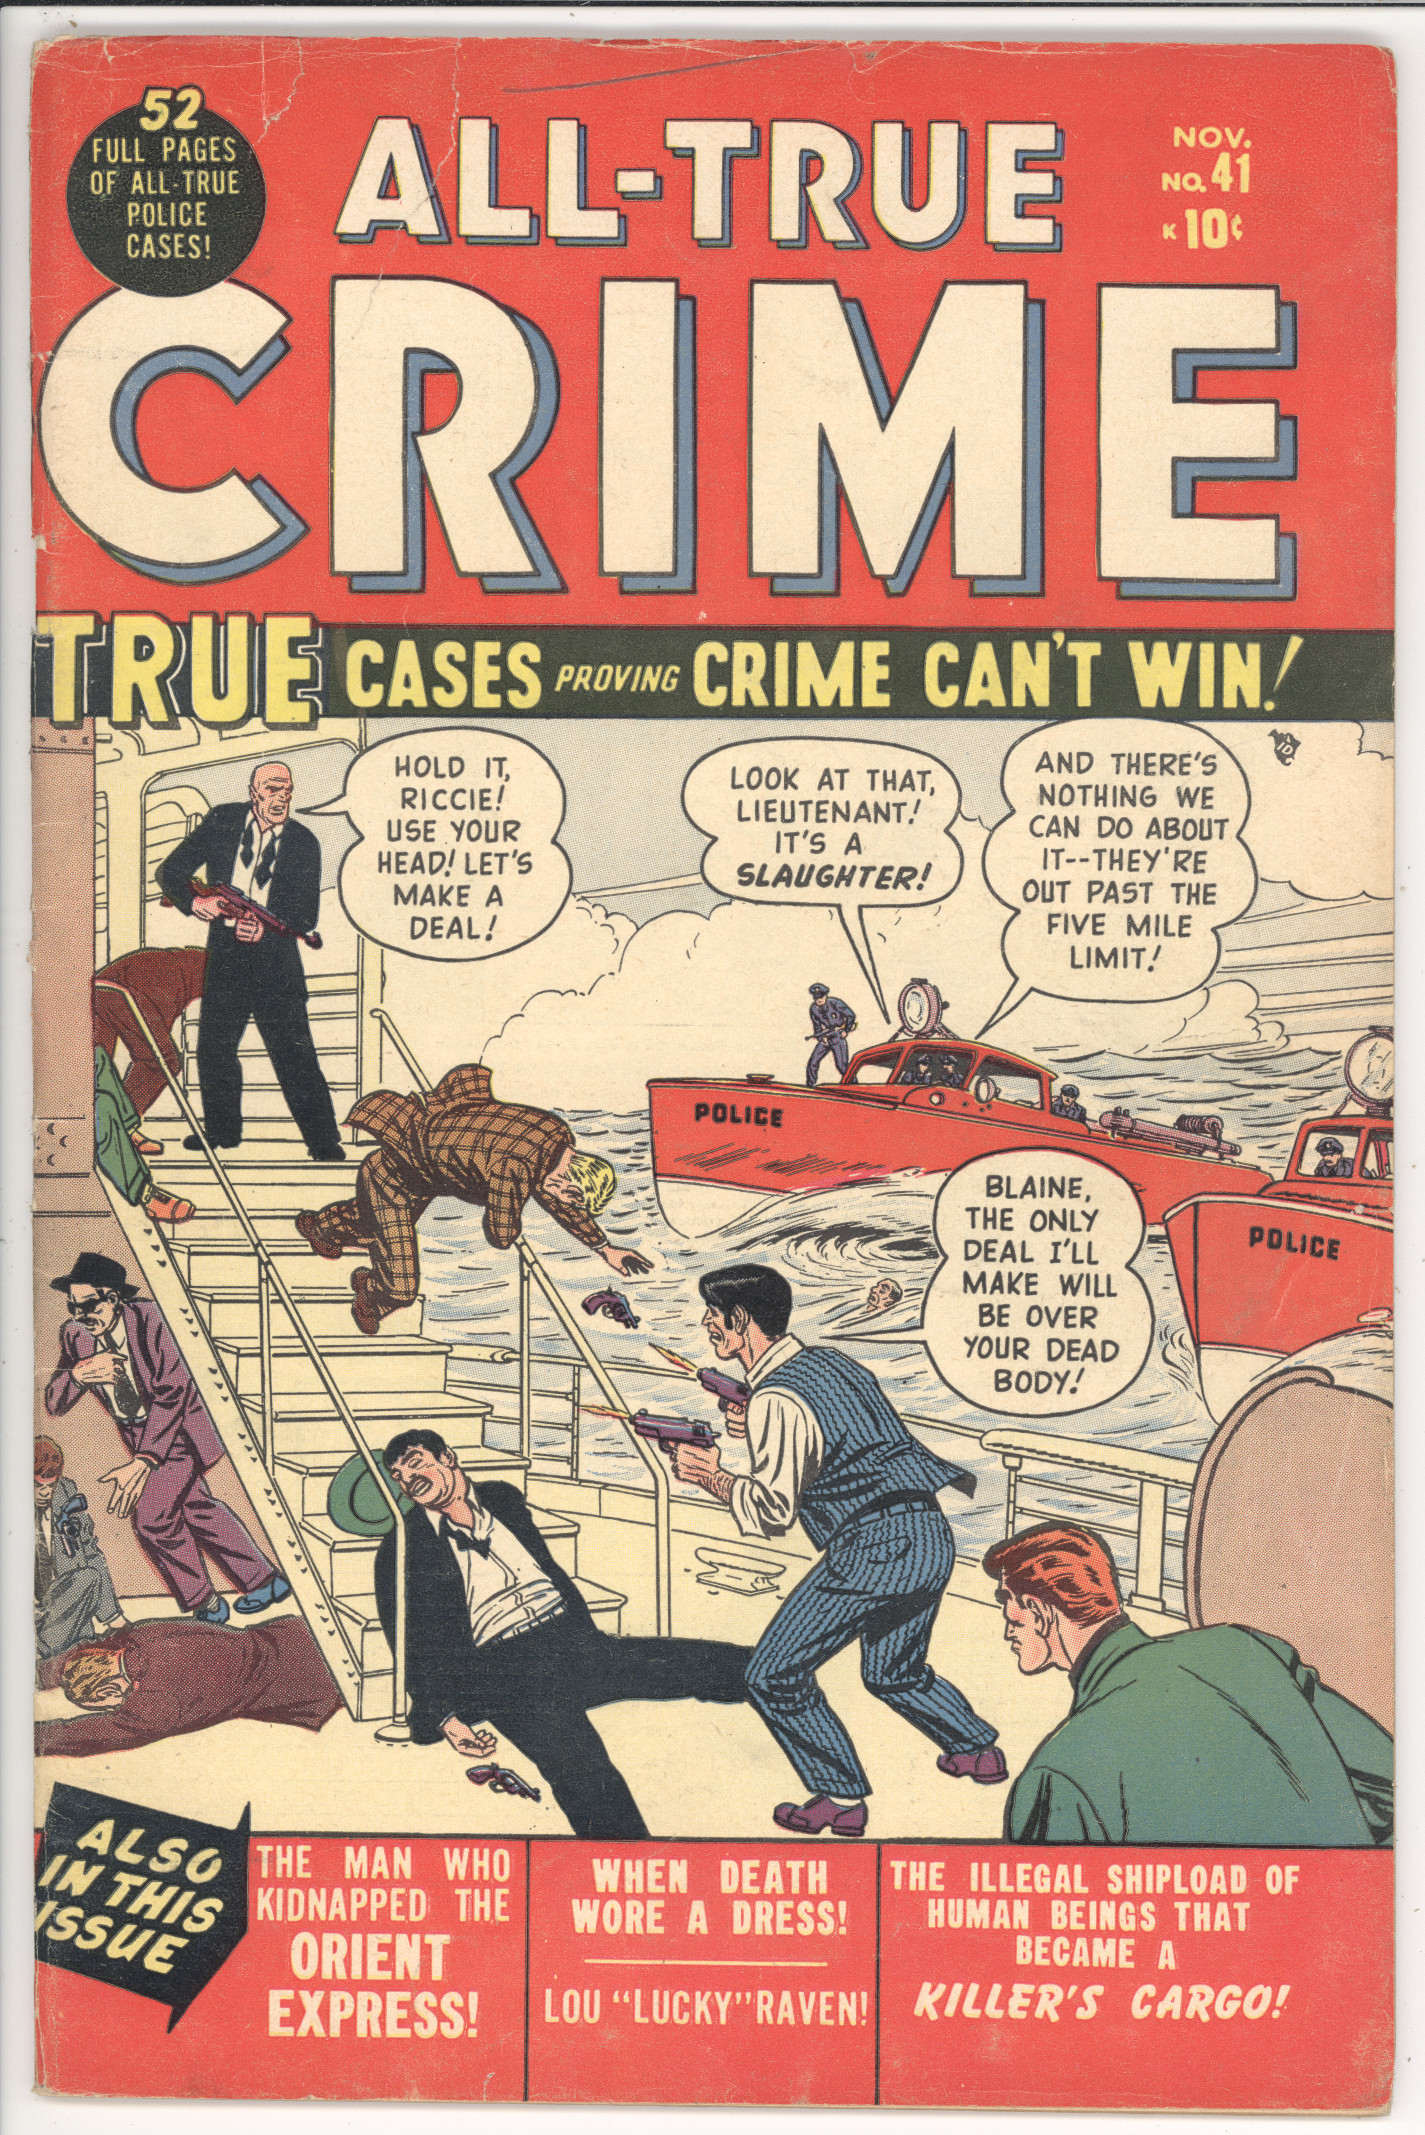 All-True Crime  #41